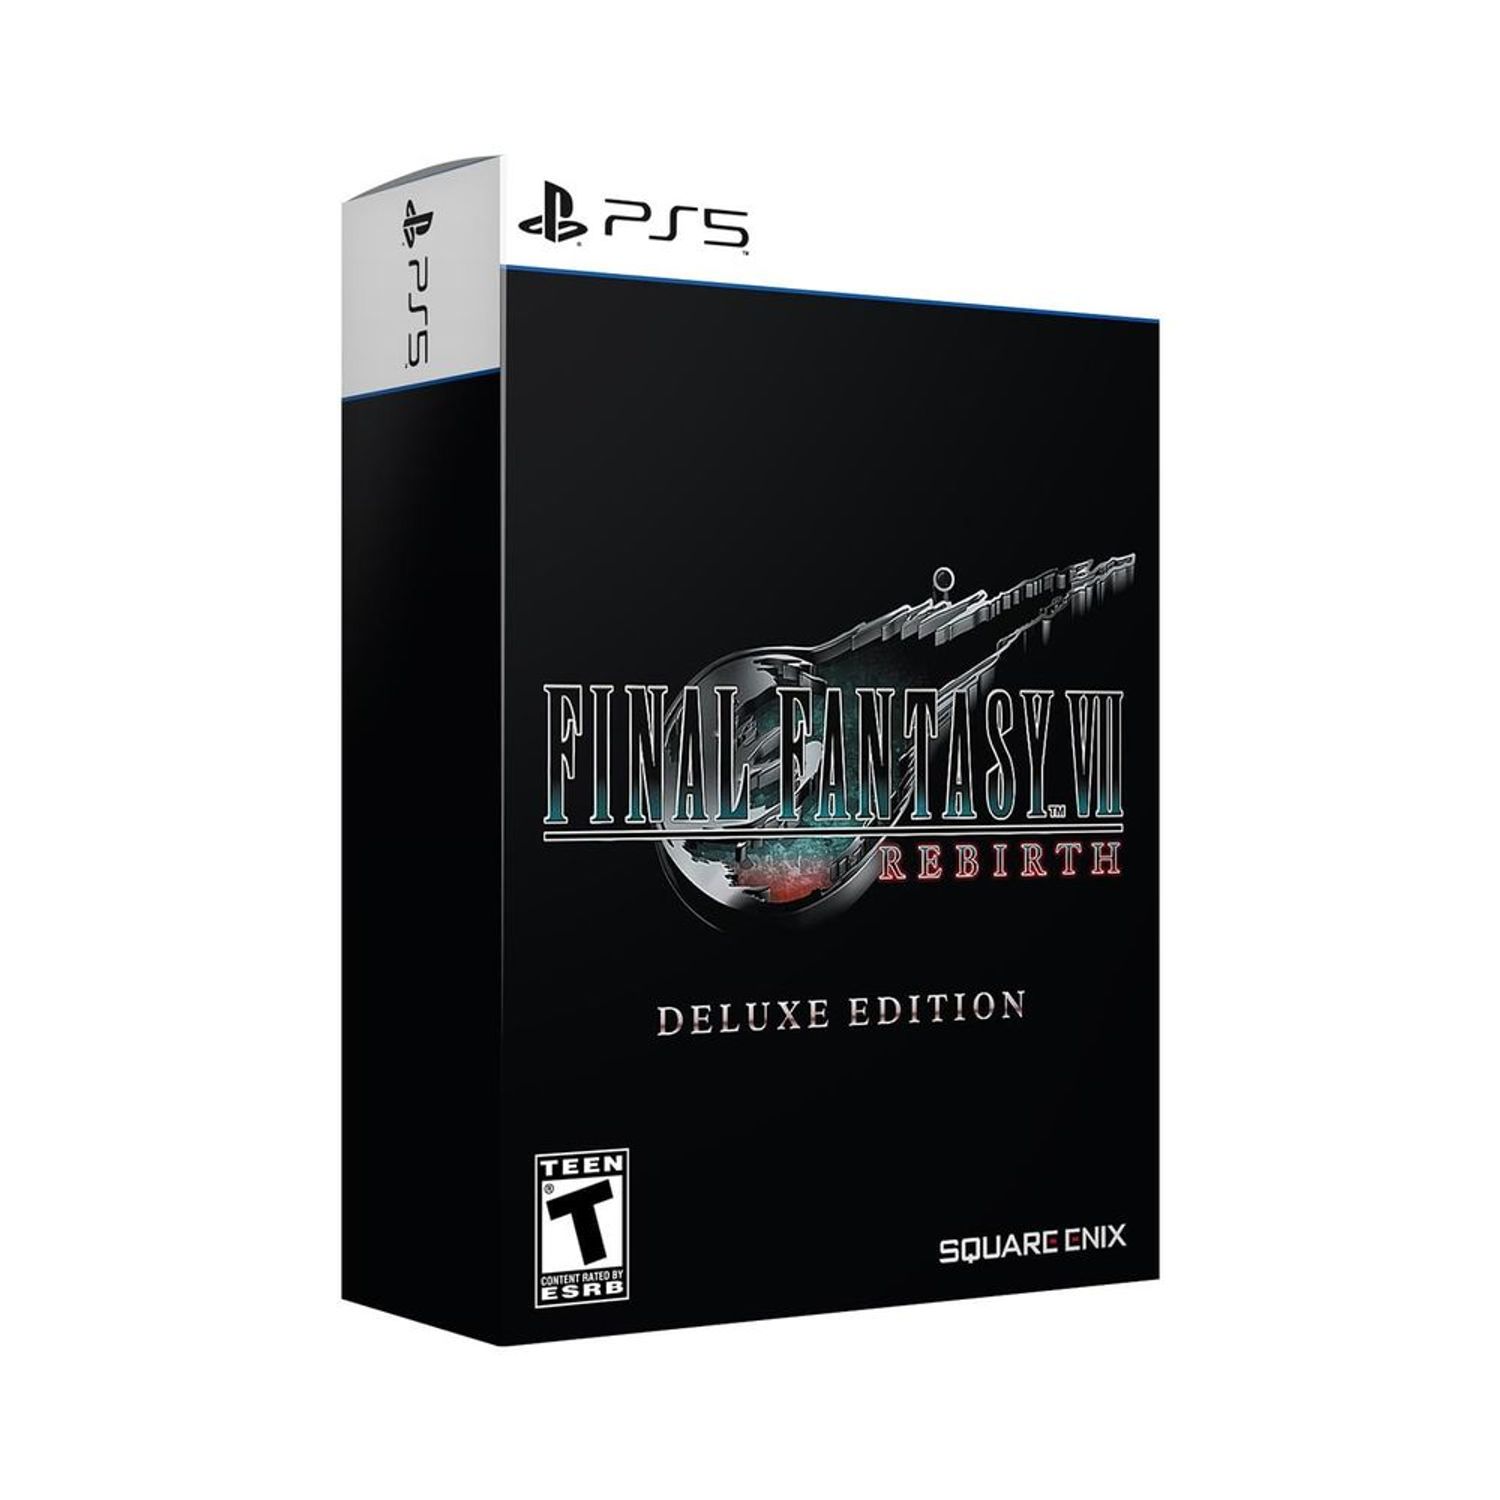 Qué edición de Final Fantasy 7 Rebirth comprar? Precios y